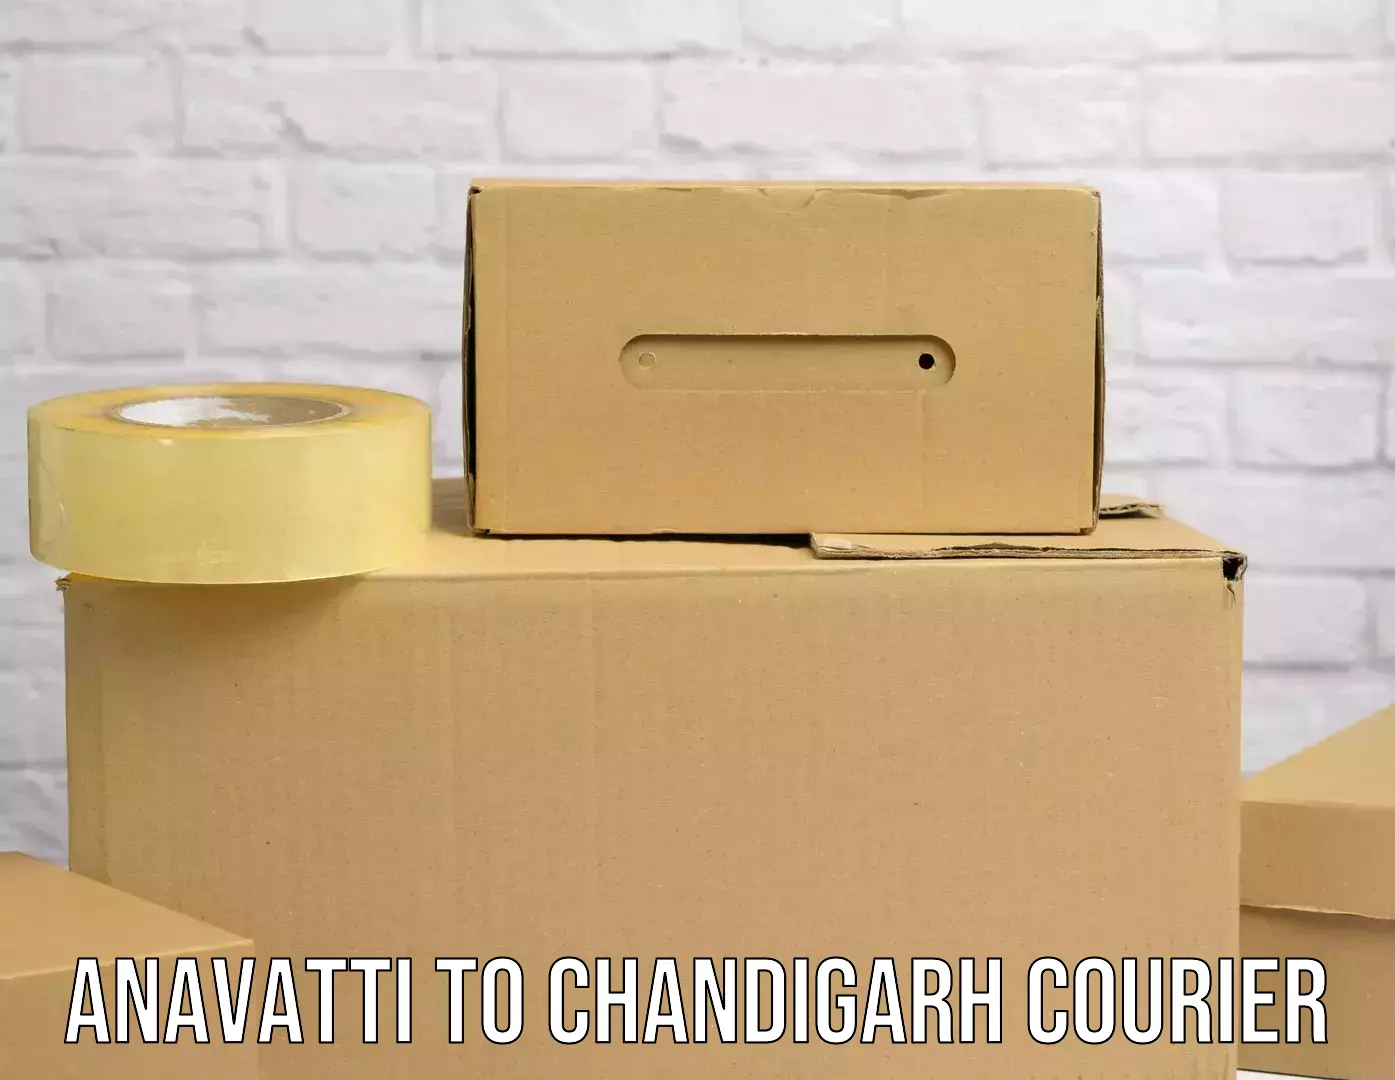 Special handling courier Anavatti to Chandigarh